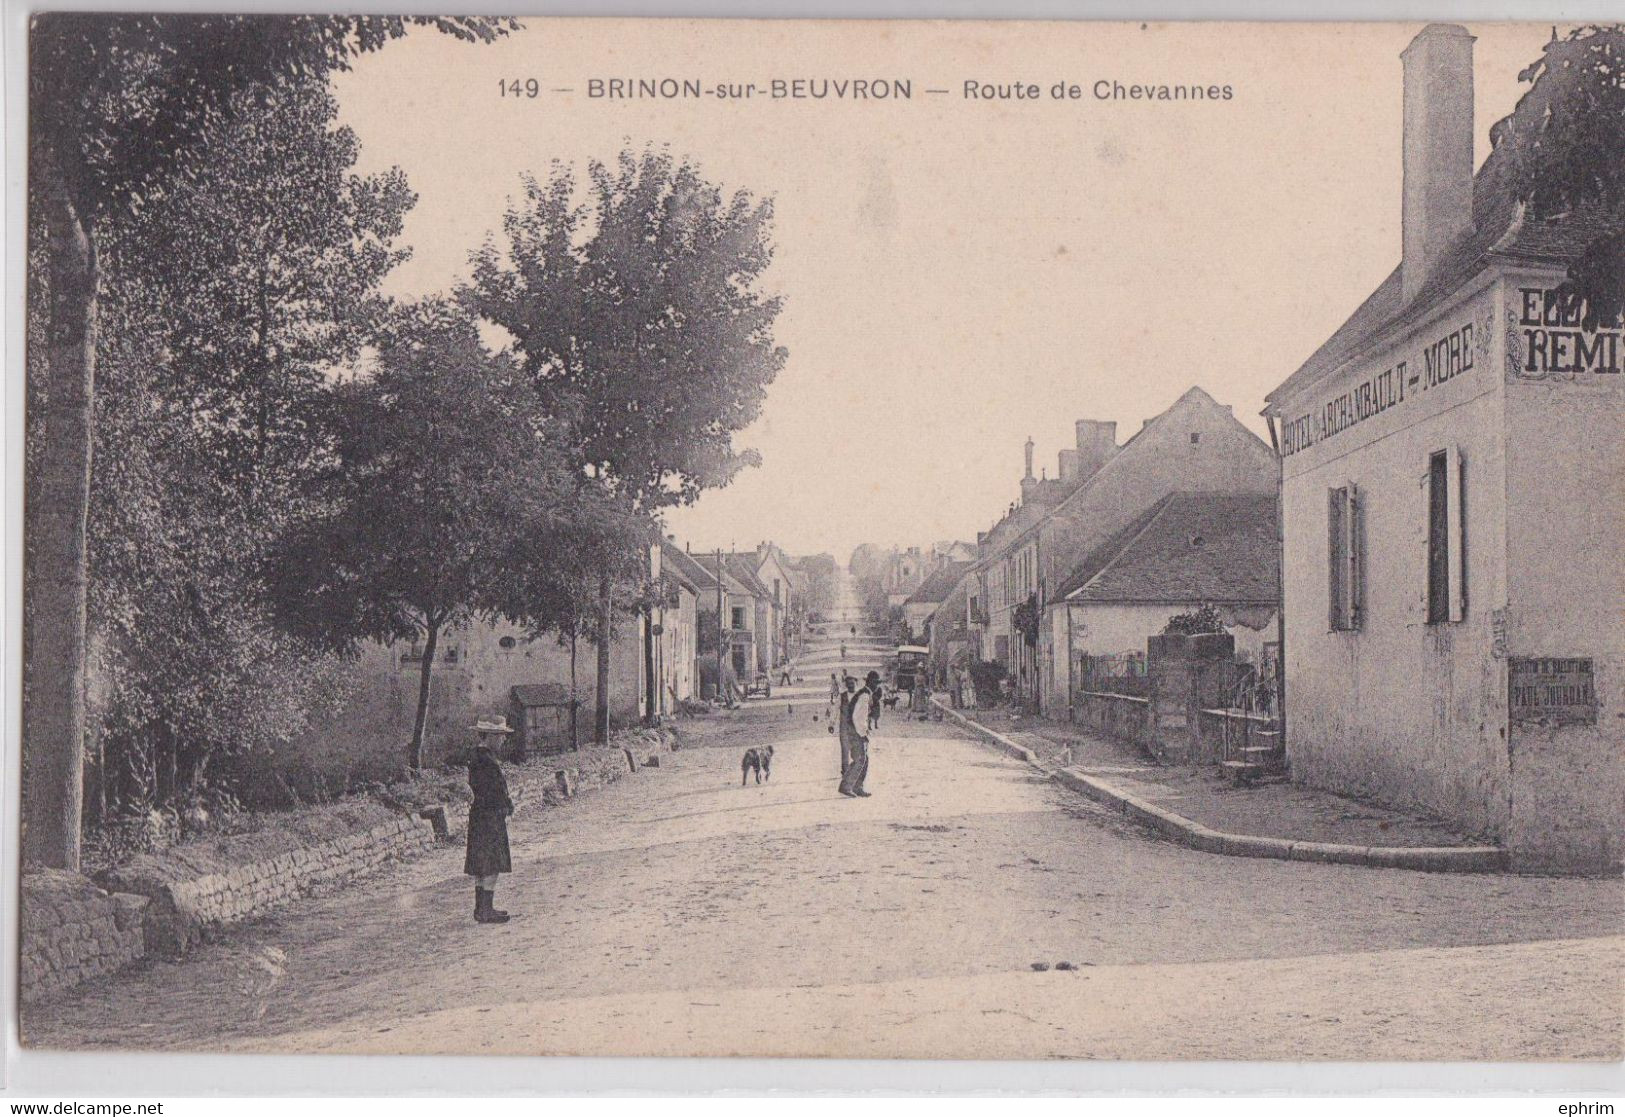 Brinon-sur-Beuvron (Nièvre) - Route De Chevannes Hôtel D'Archambault More - Brinon Sur Beuvron